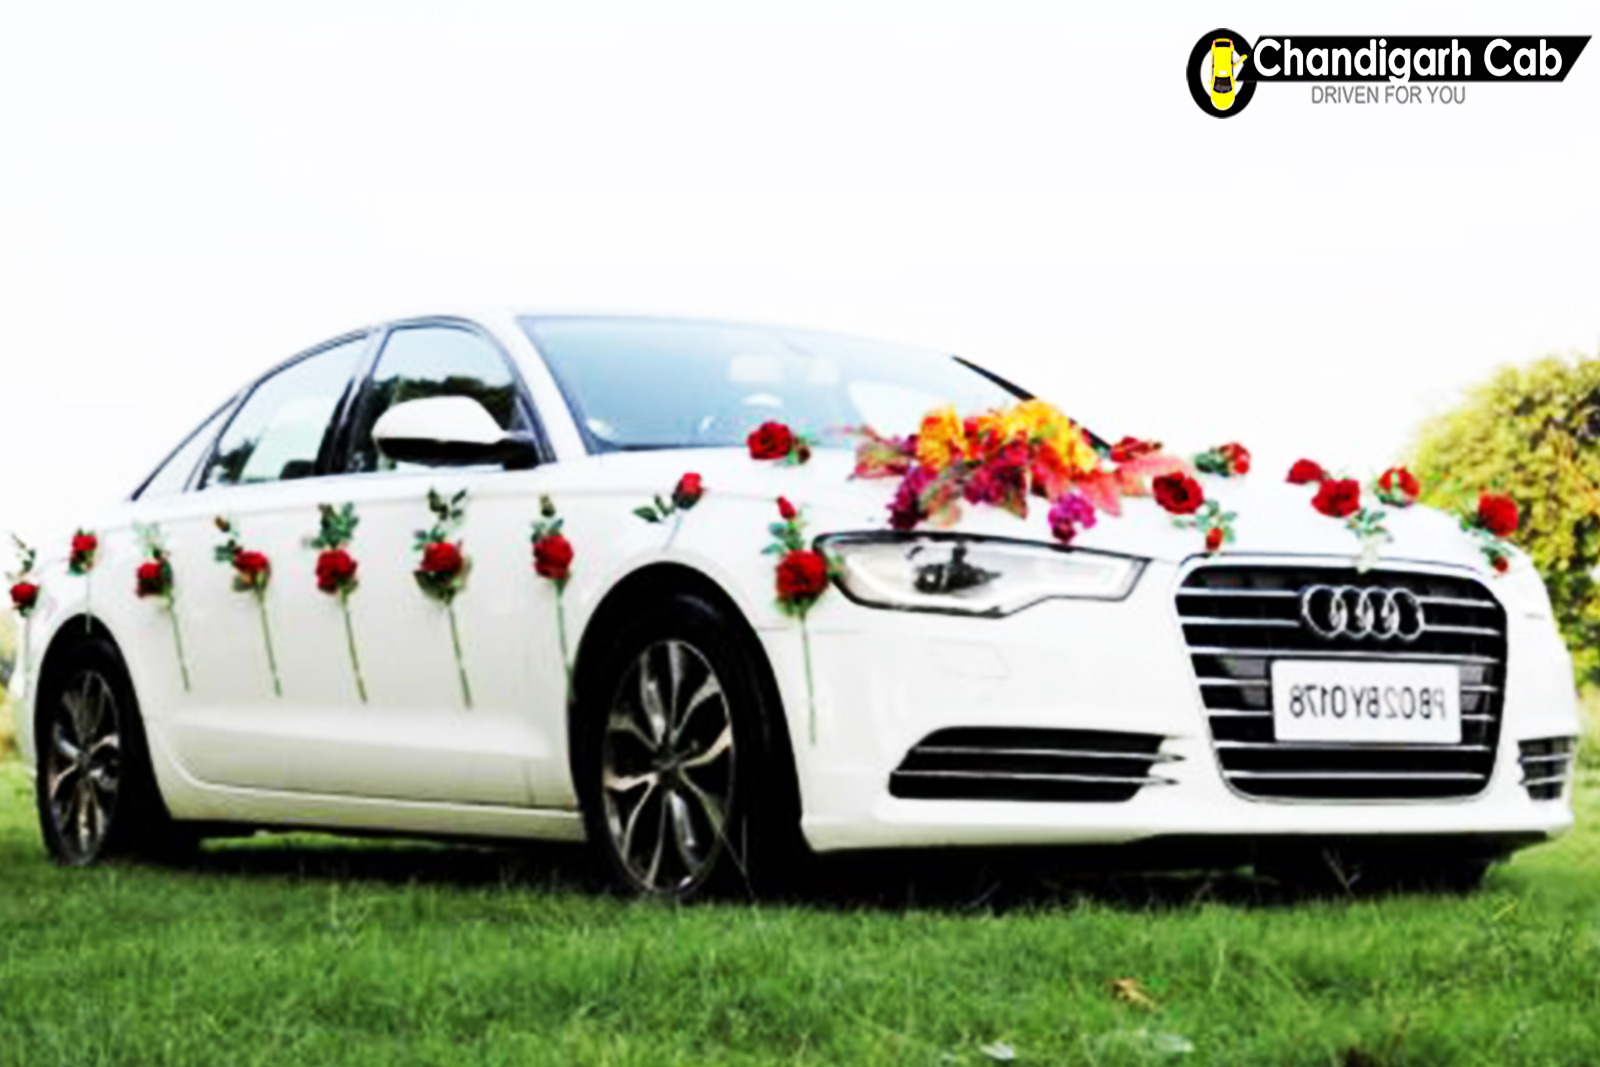 chandigarh wedding cars, wedding car rental, chandigarh cab for wedding